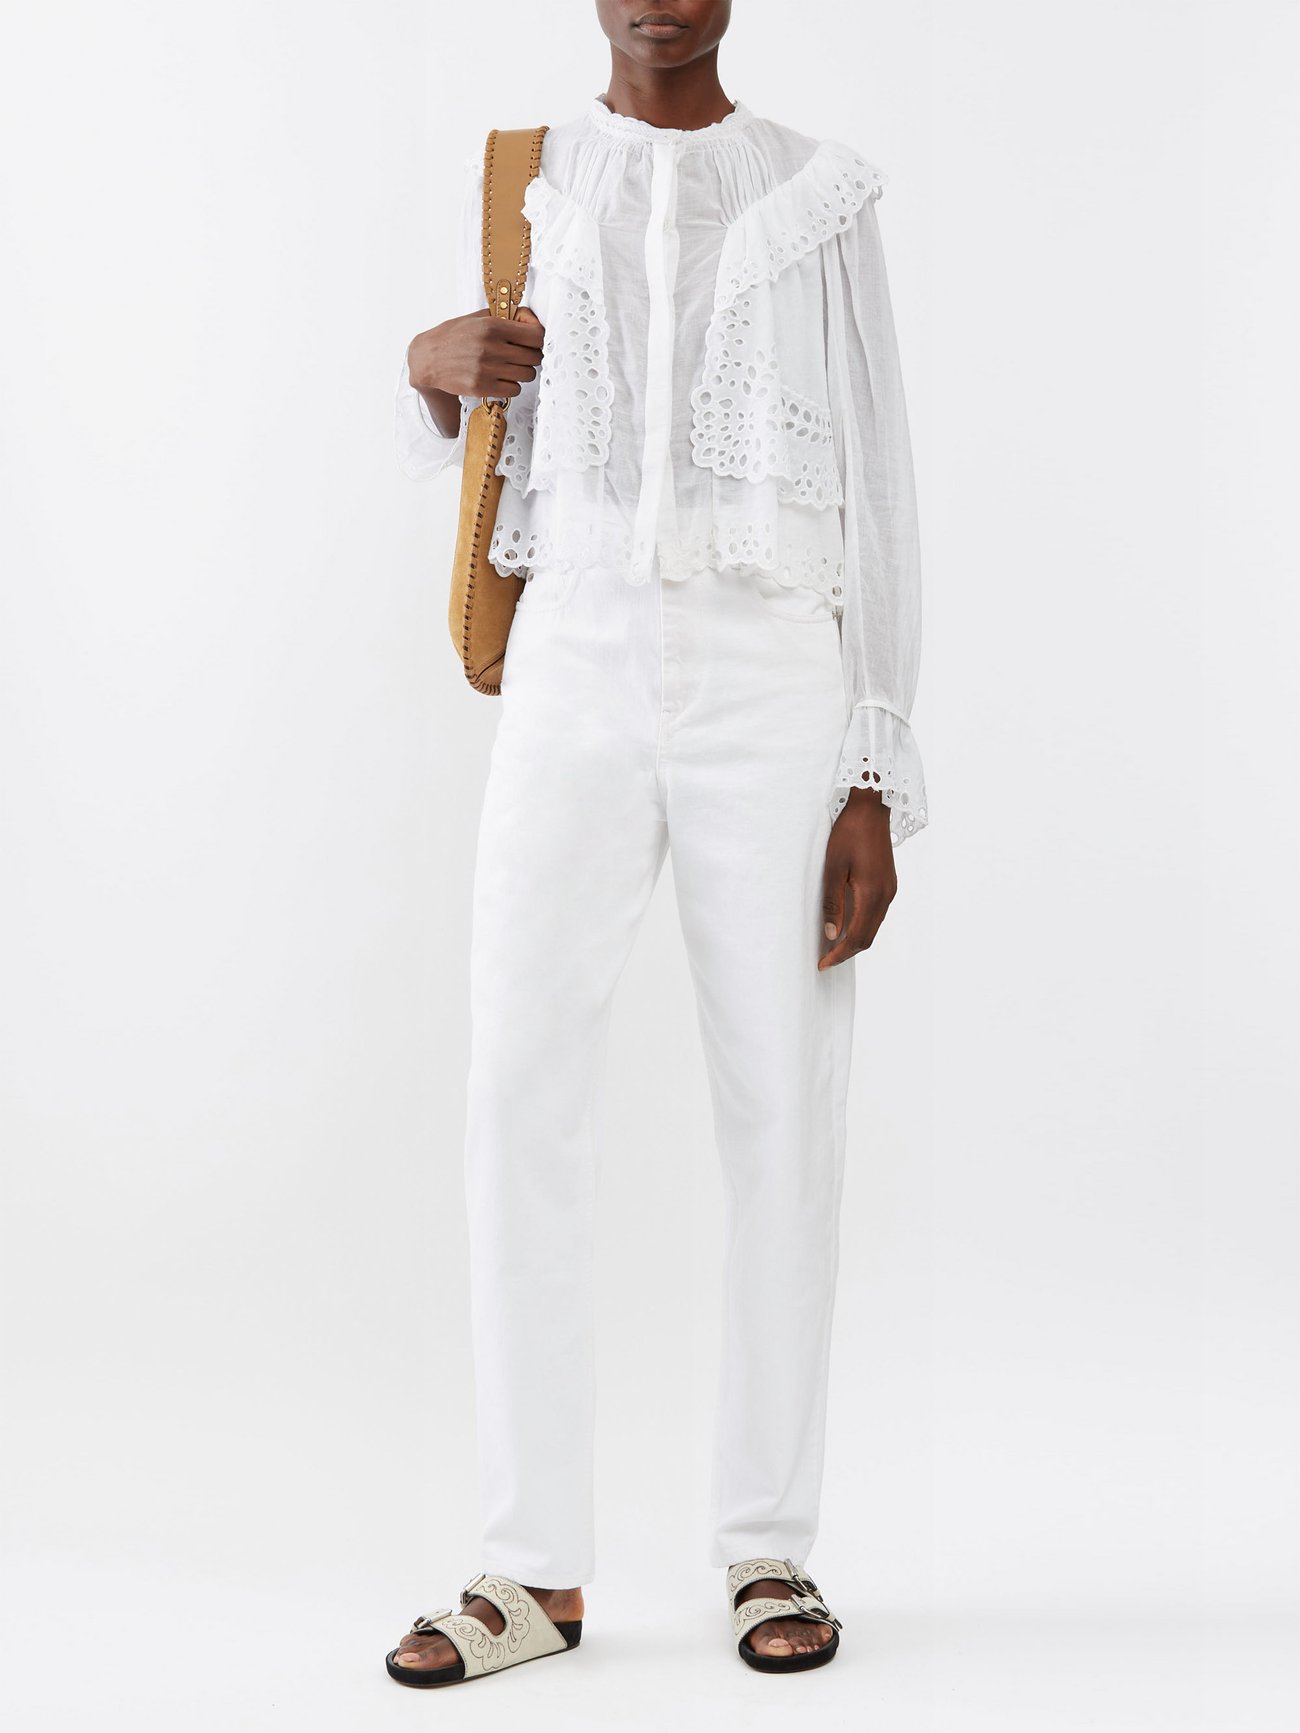 Kelmon | blouse Marant cotton-voile MATCHES UK | broderie-anglaise White Etoile